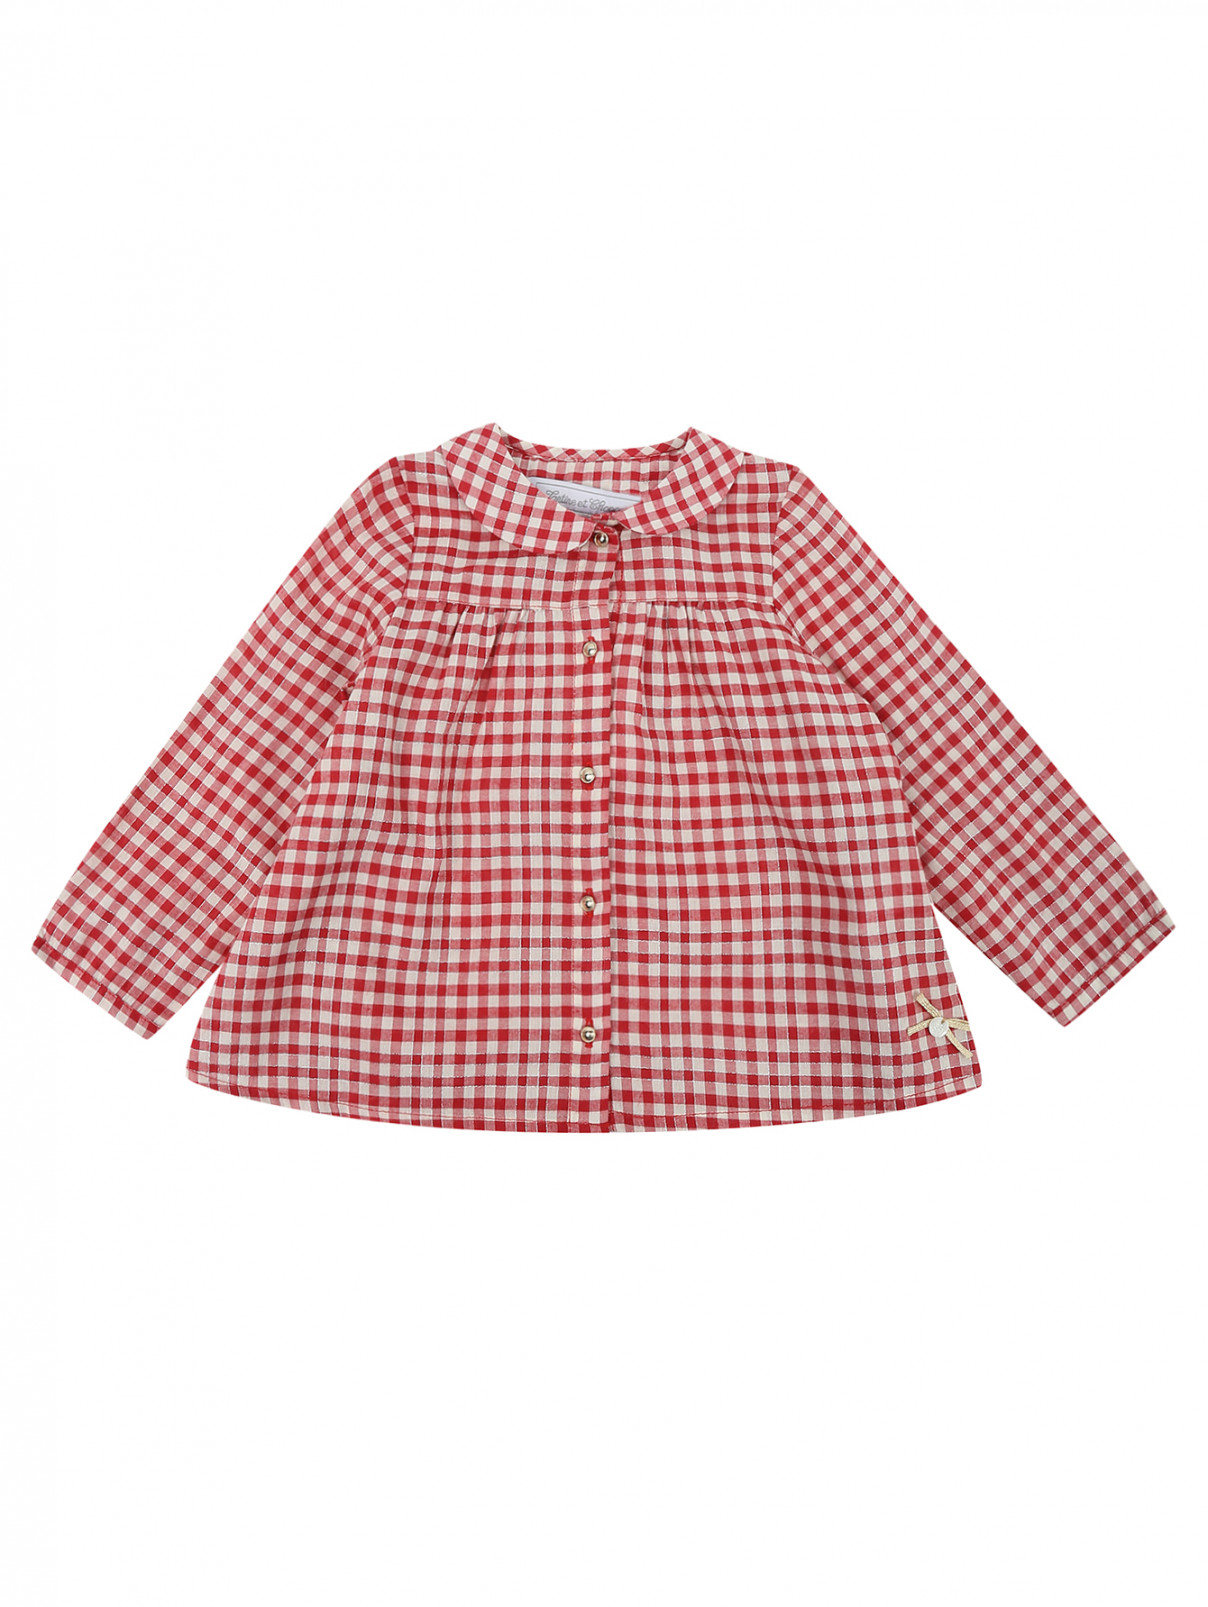 Блуза хлопковая в клетку Tartine Et Chocolat  –  Общий вид  – Цвет:  Красный